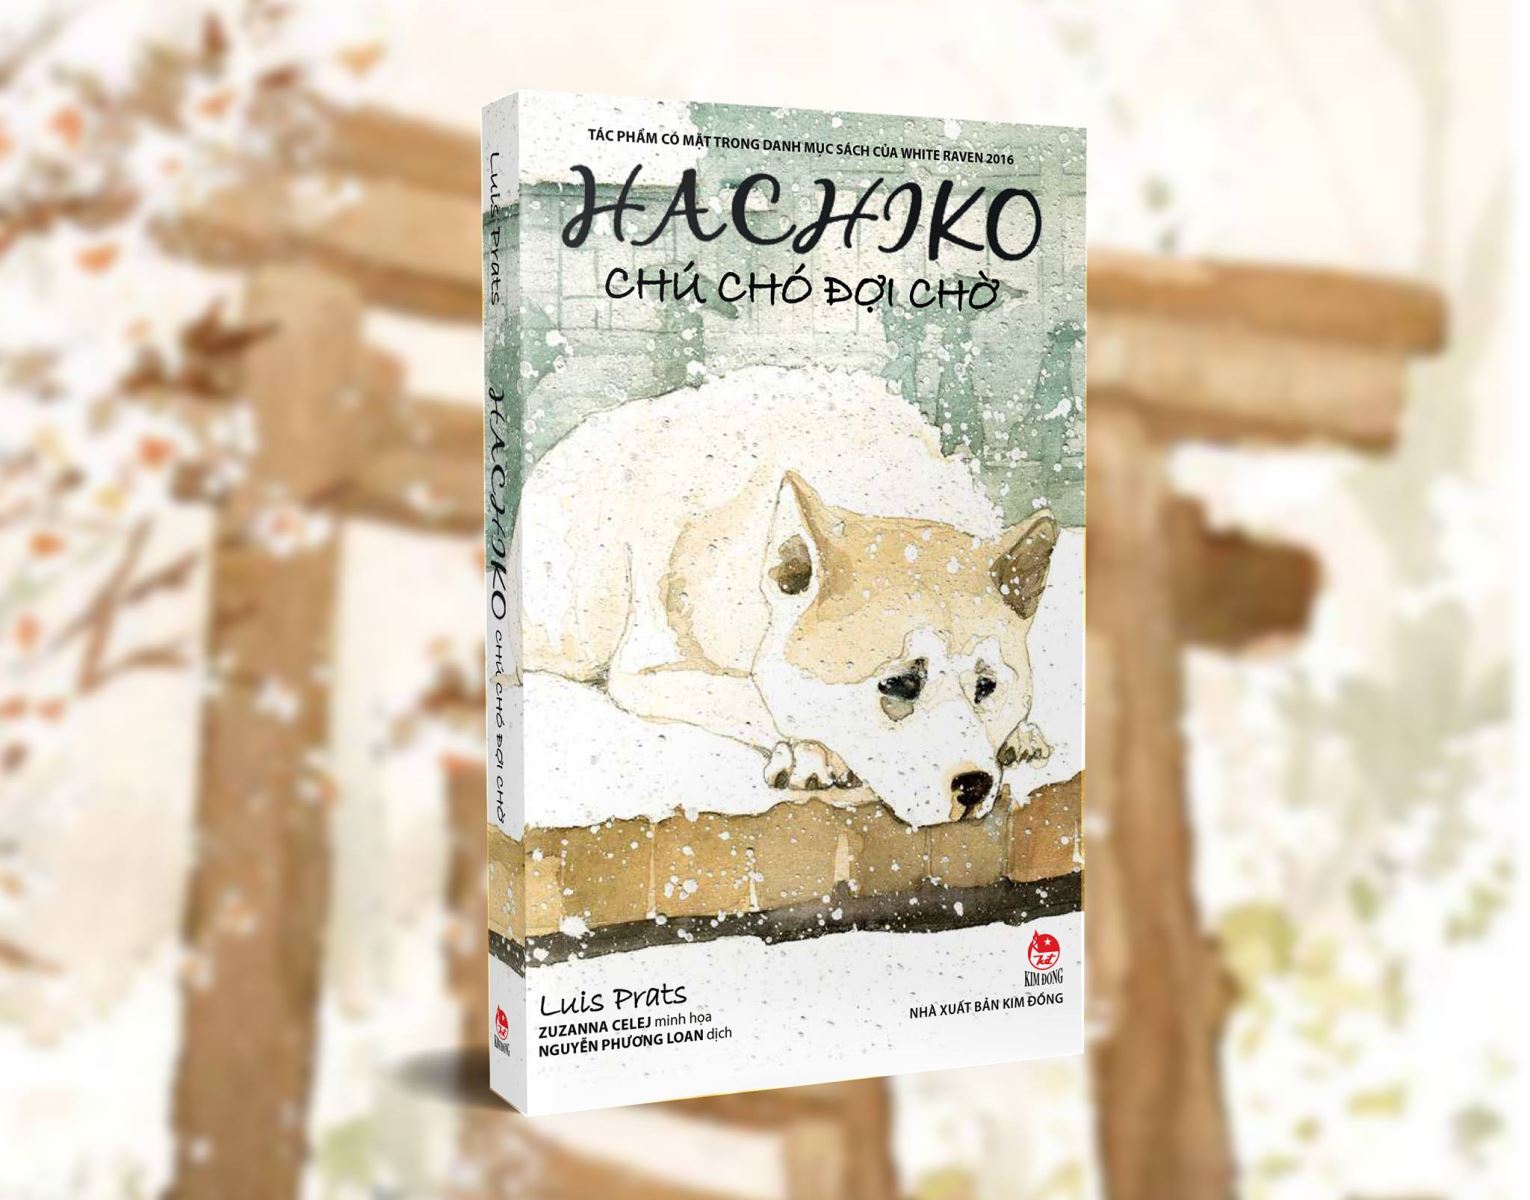 Chú chó Hachiko đã trở thành một biểu tượng của sự trung thành với người chủ của mình. Nếu bạn muốn khám phá câu chuyện cảm động về \